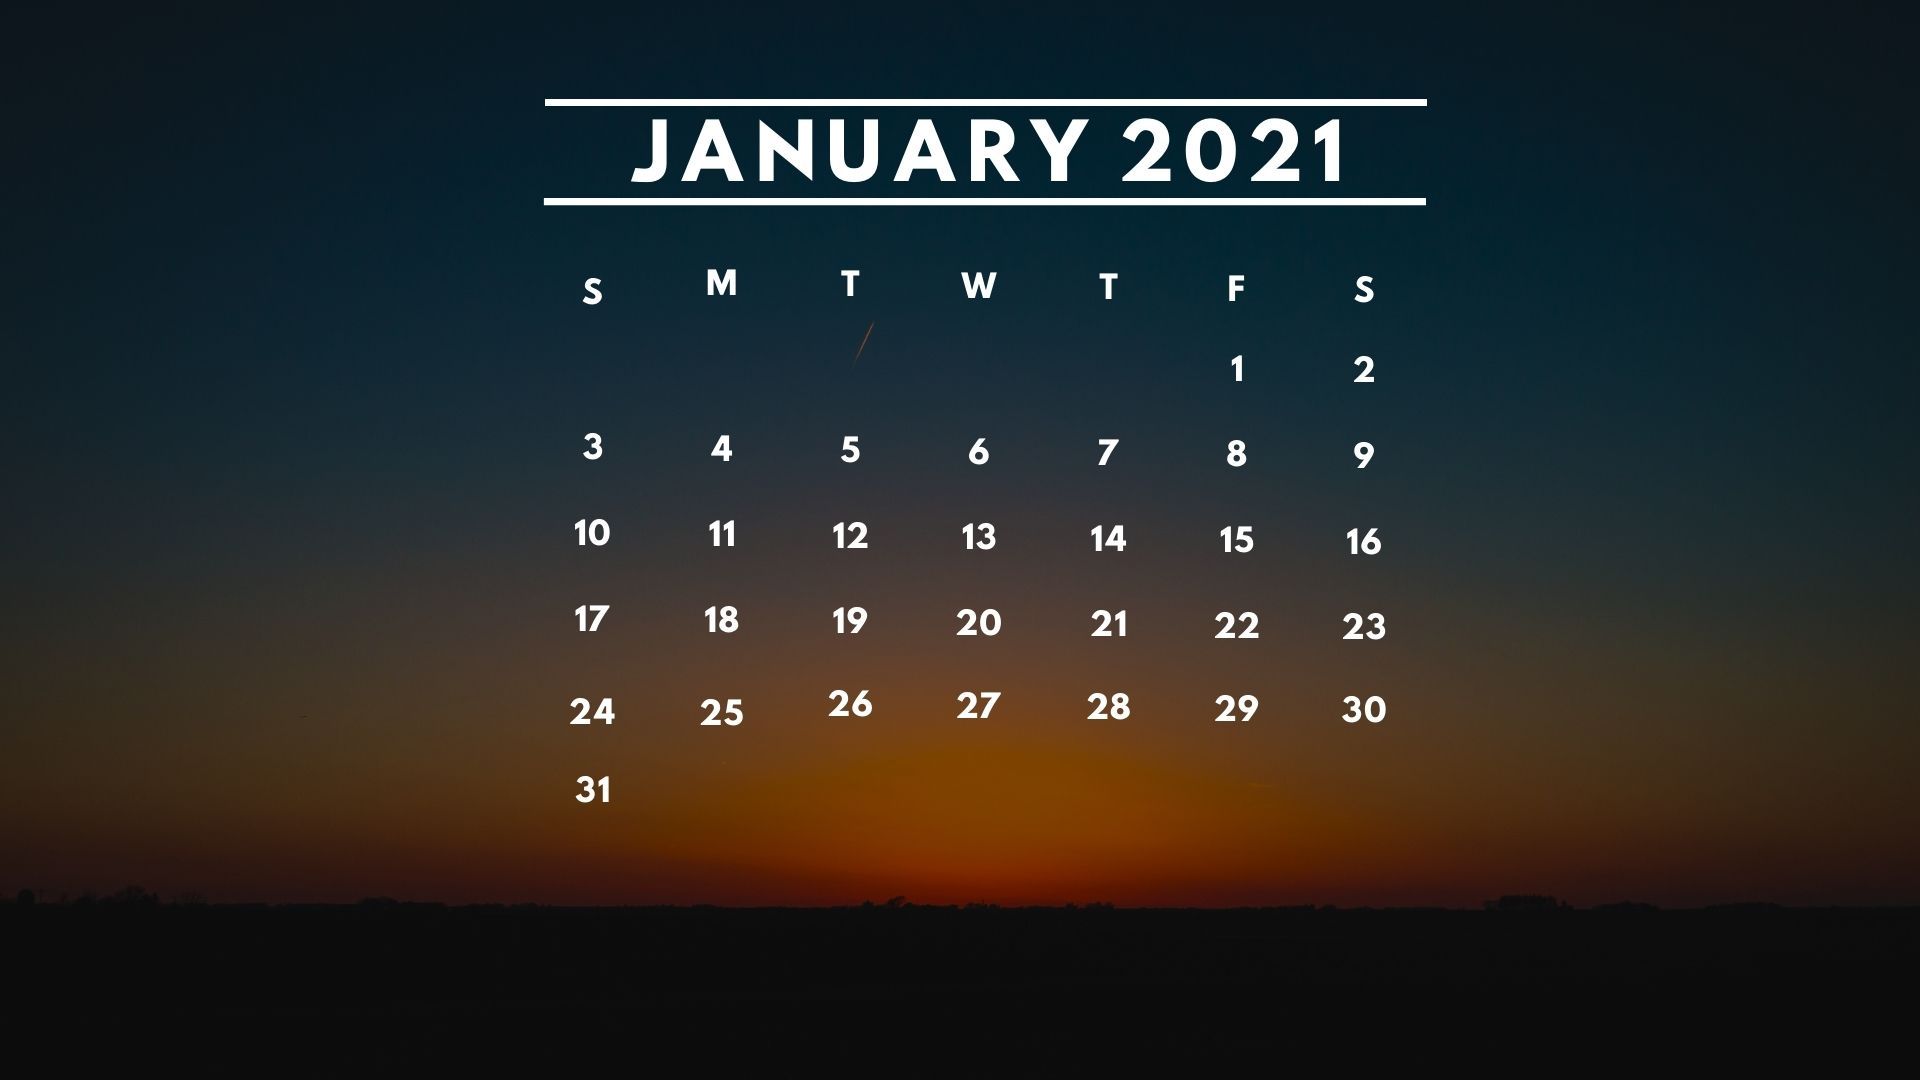 January 2021 Calendar Desktop Background Wallpaper Download in 2020 calendar, Calendar wallpaper, January calendar